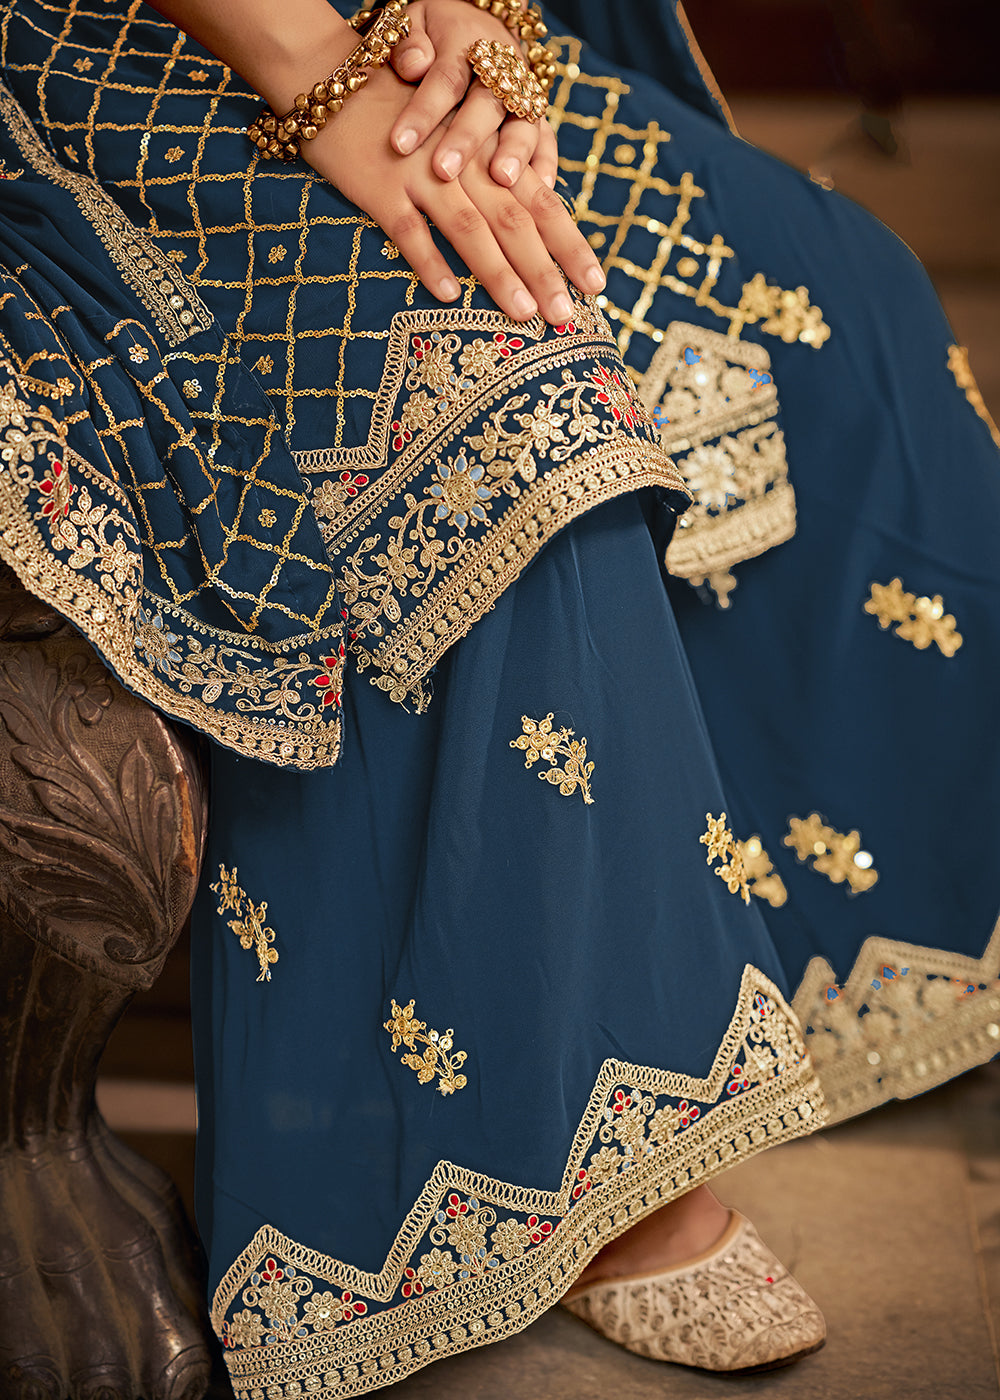 Women Designer Skirt Kurta Set Beautiful Flared Kurti Palazzo Pakistani Suit  New | eBay